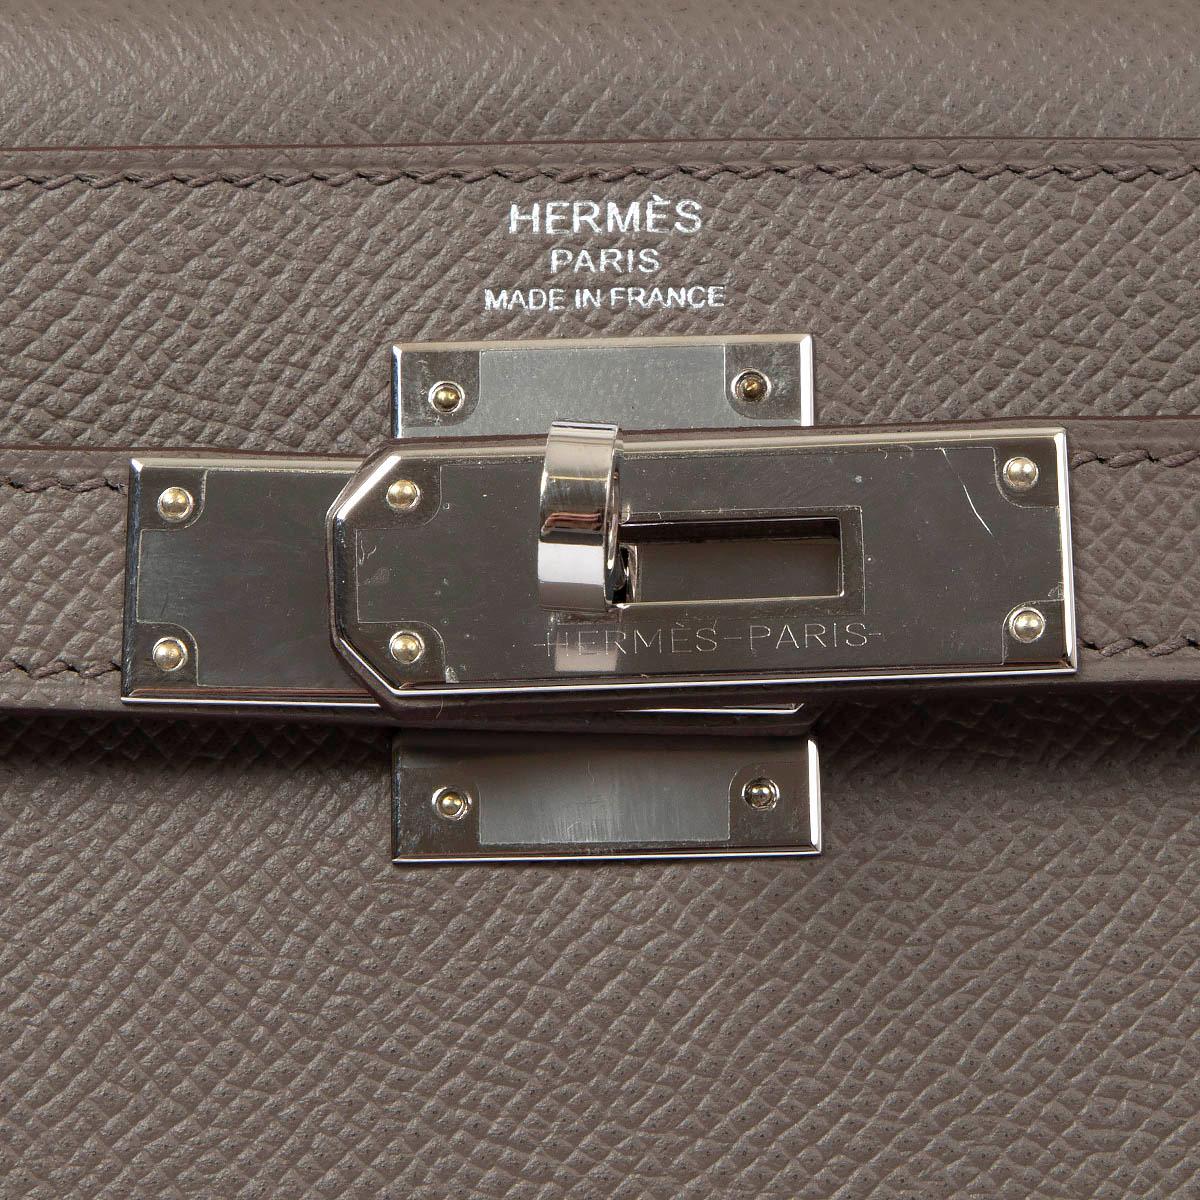 HERMES Etain grey Epsom leather KELLY 28 SELLIER Bag Phw 2